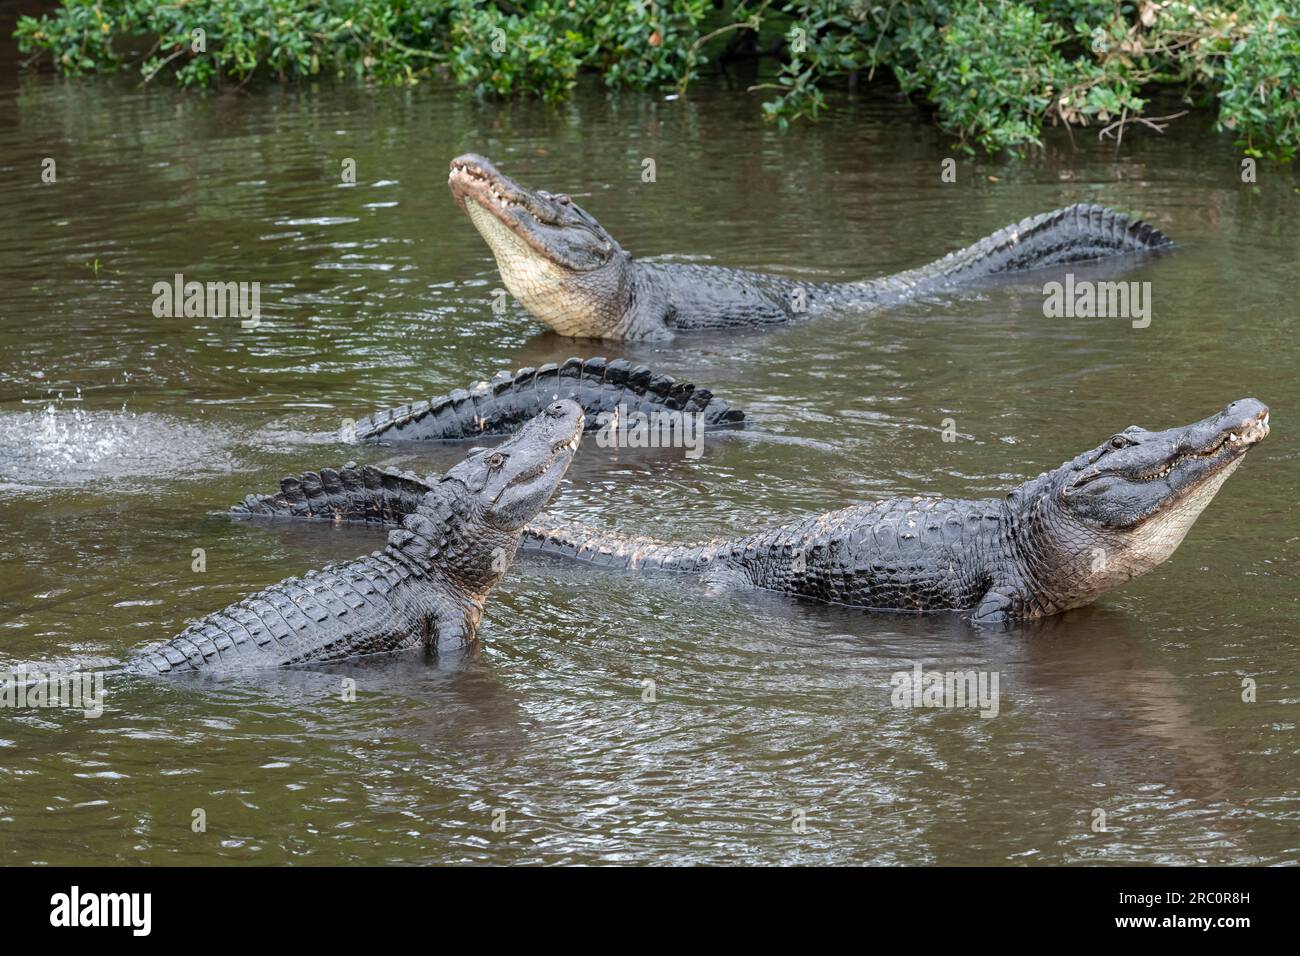 Alligator américain (Alligator mississippiensis) montrant un comportement de cour avant l'accouplement, Floride, États-Unis, par Dominique Braud/Dembinsky photo Assoc Banque D'Images